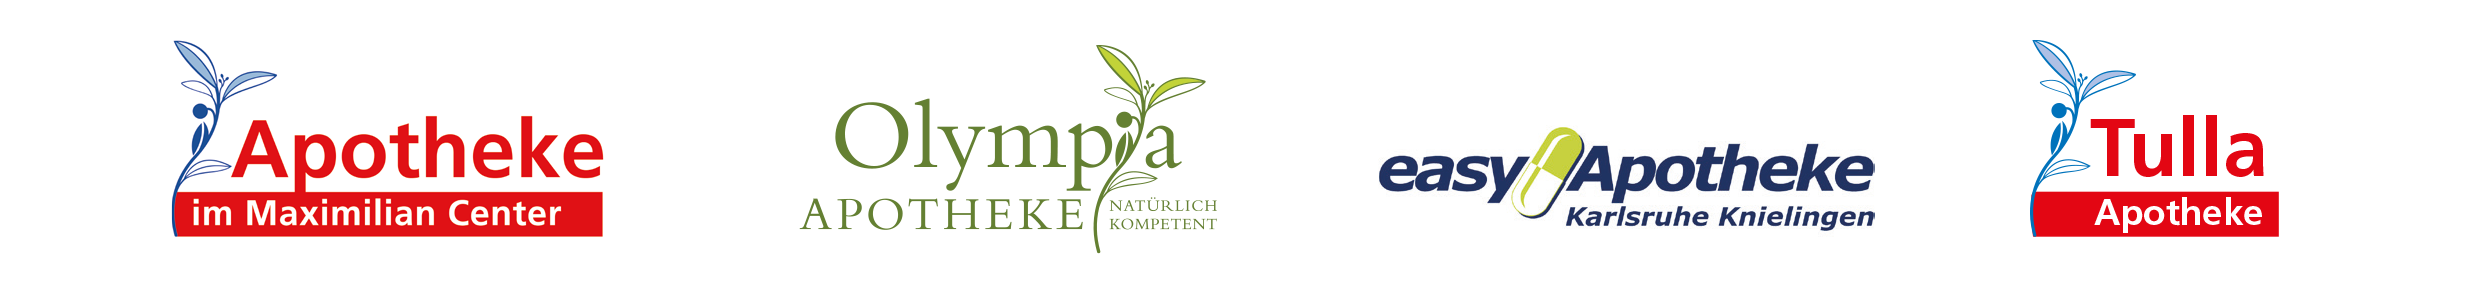 Apotheken-Logos